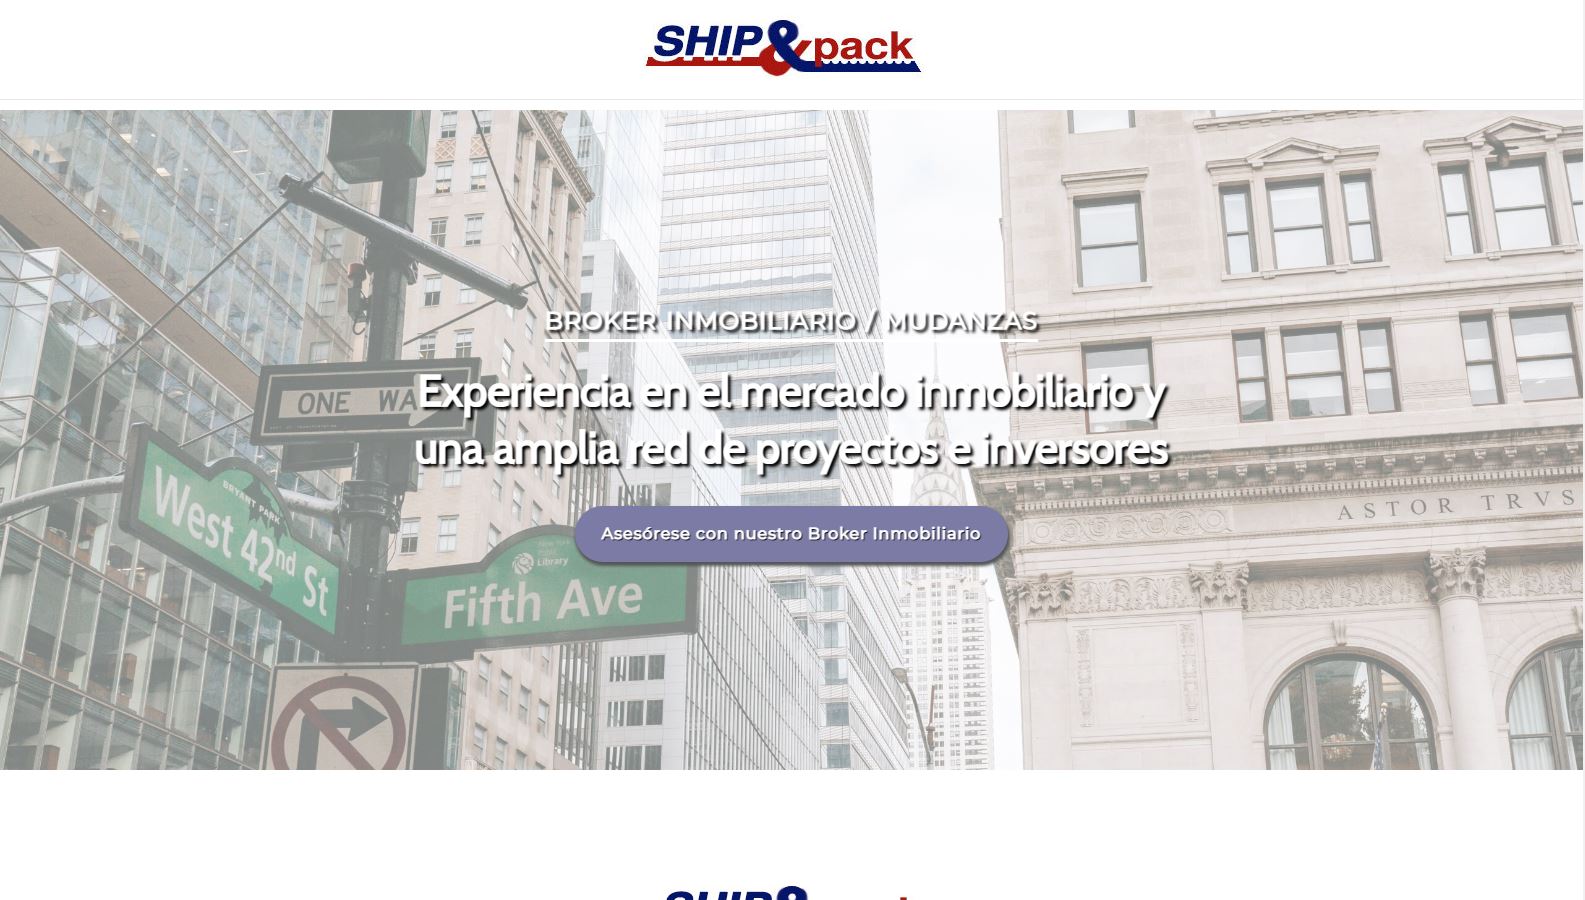 Página Web - SHIP&pack.com - Gestion de envios desde MIAMI al mundo.